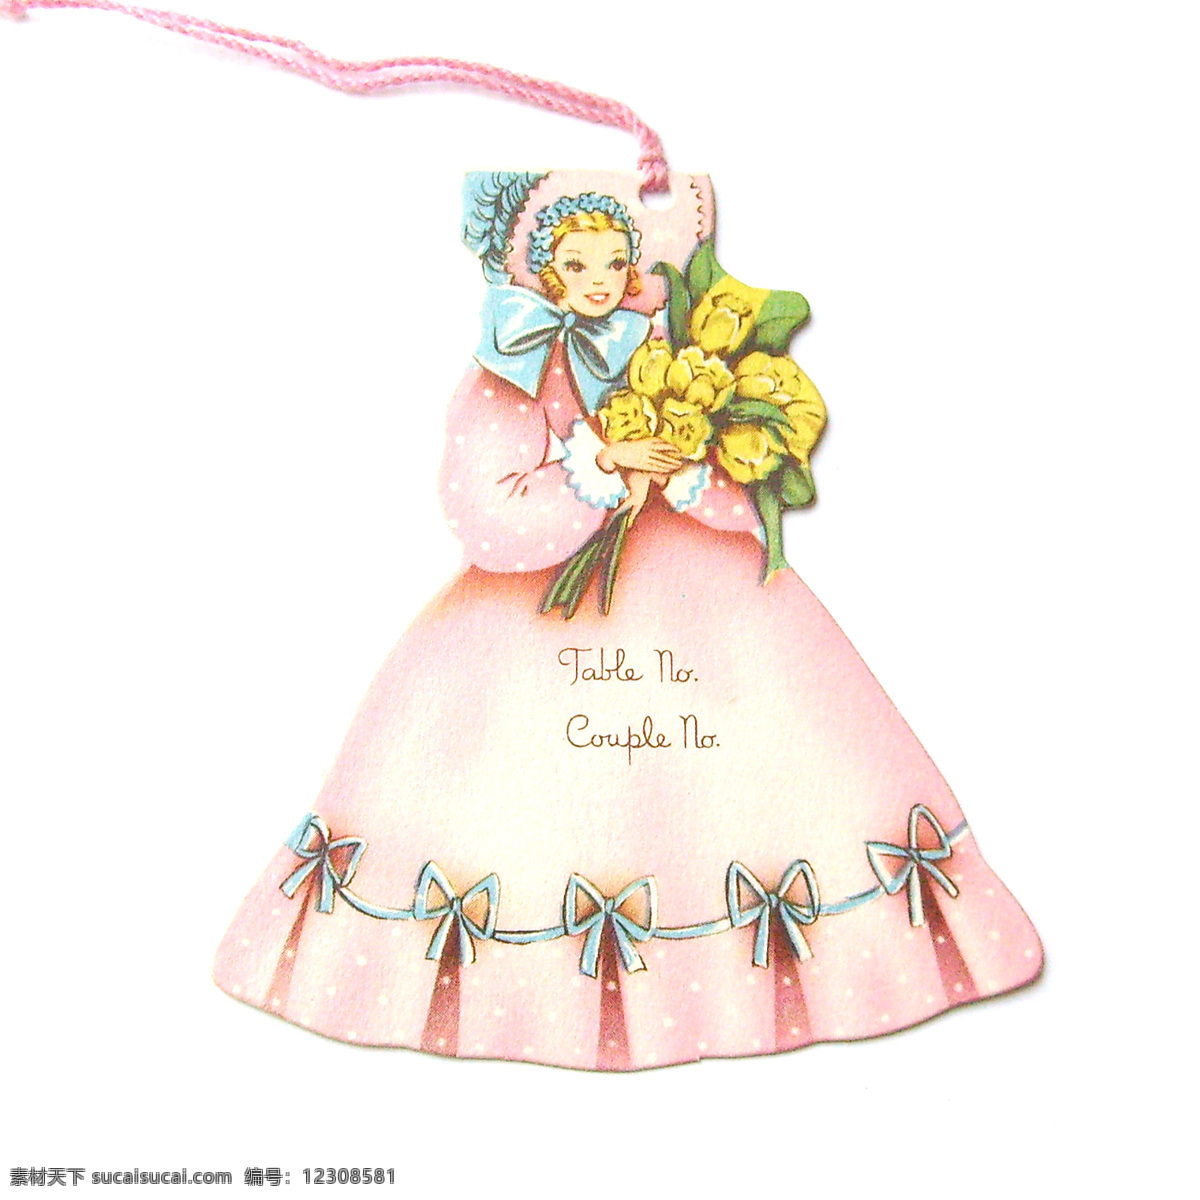 吊牌免费下载 吊牌 服装图案 花朵 女孩 人物 植物 面料图库 服装设计 图案花型